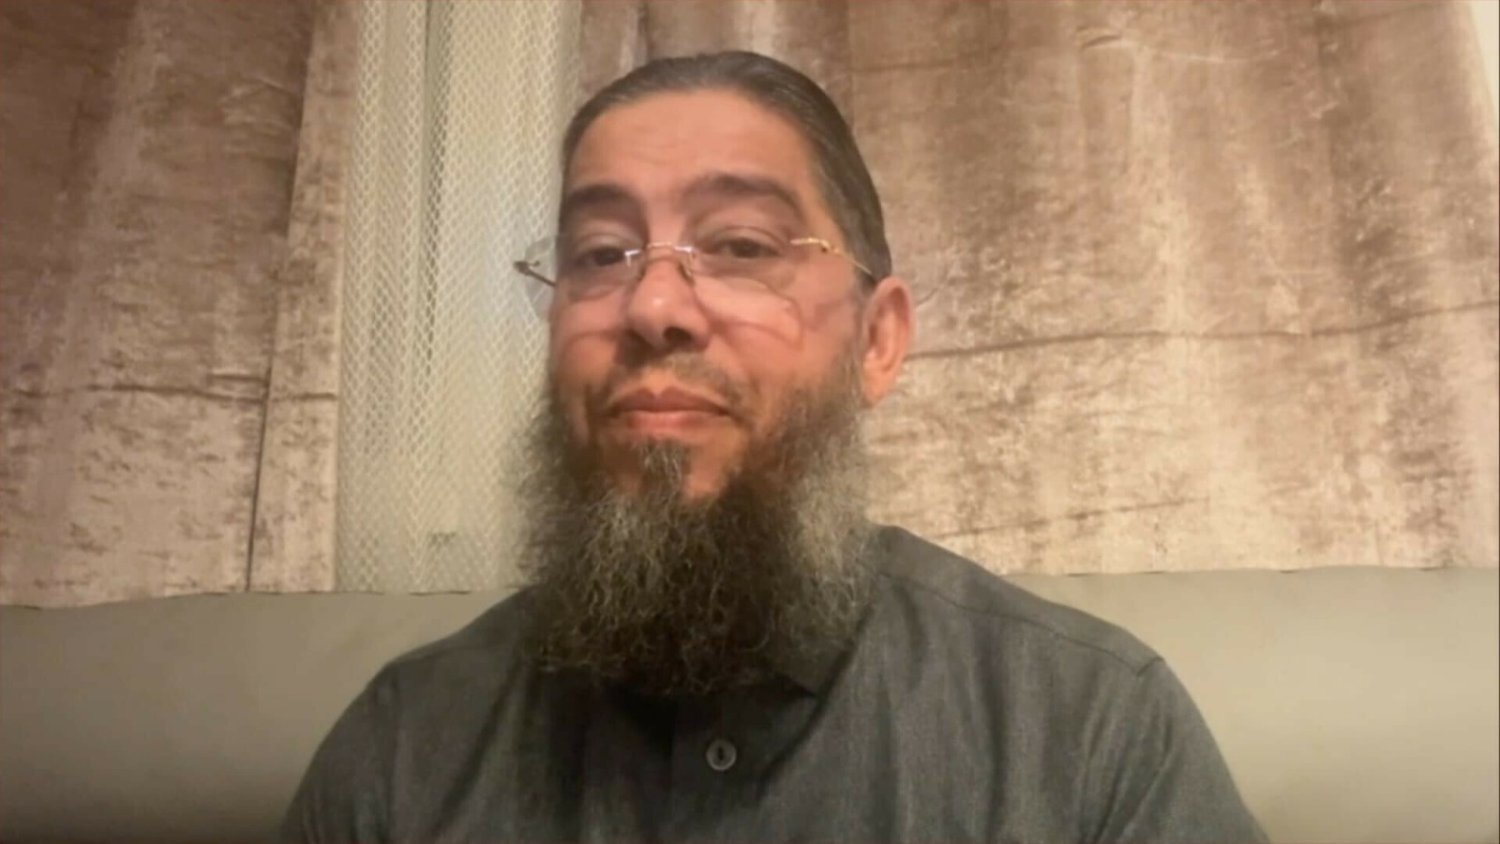 Campagne raciste : l'imam Mahjoubi menotté devant ses enfants et envoyé en centre de rétention